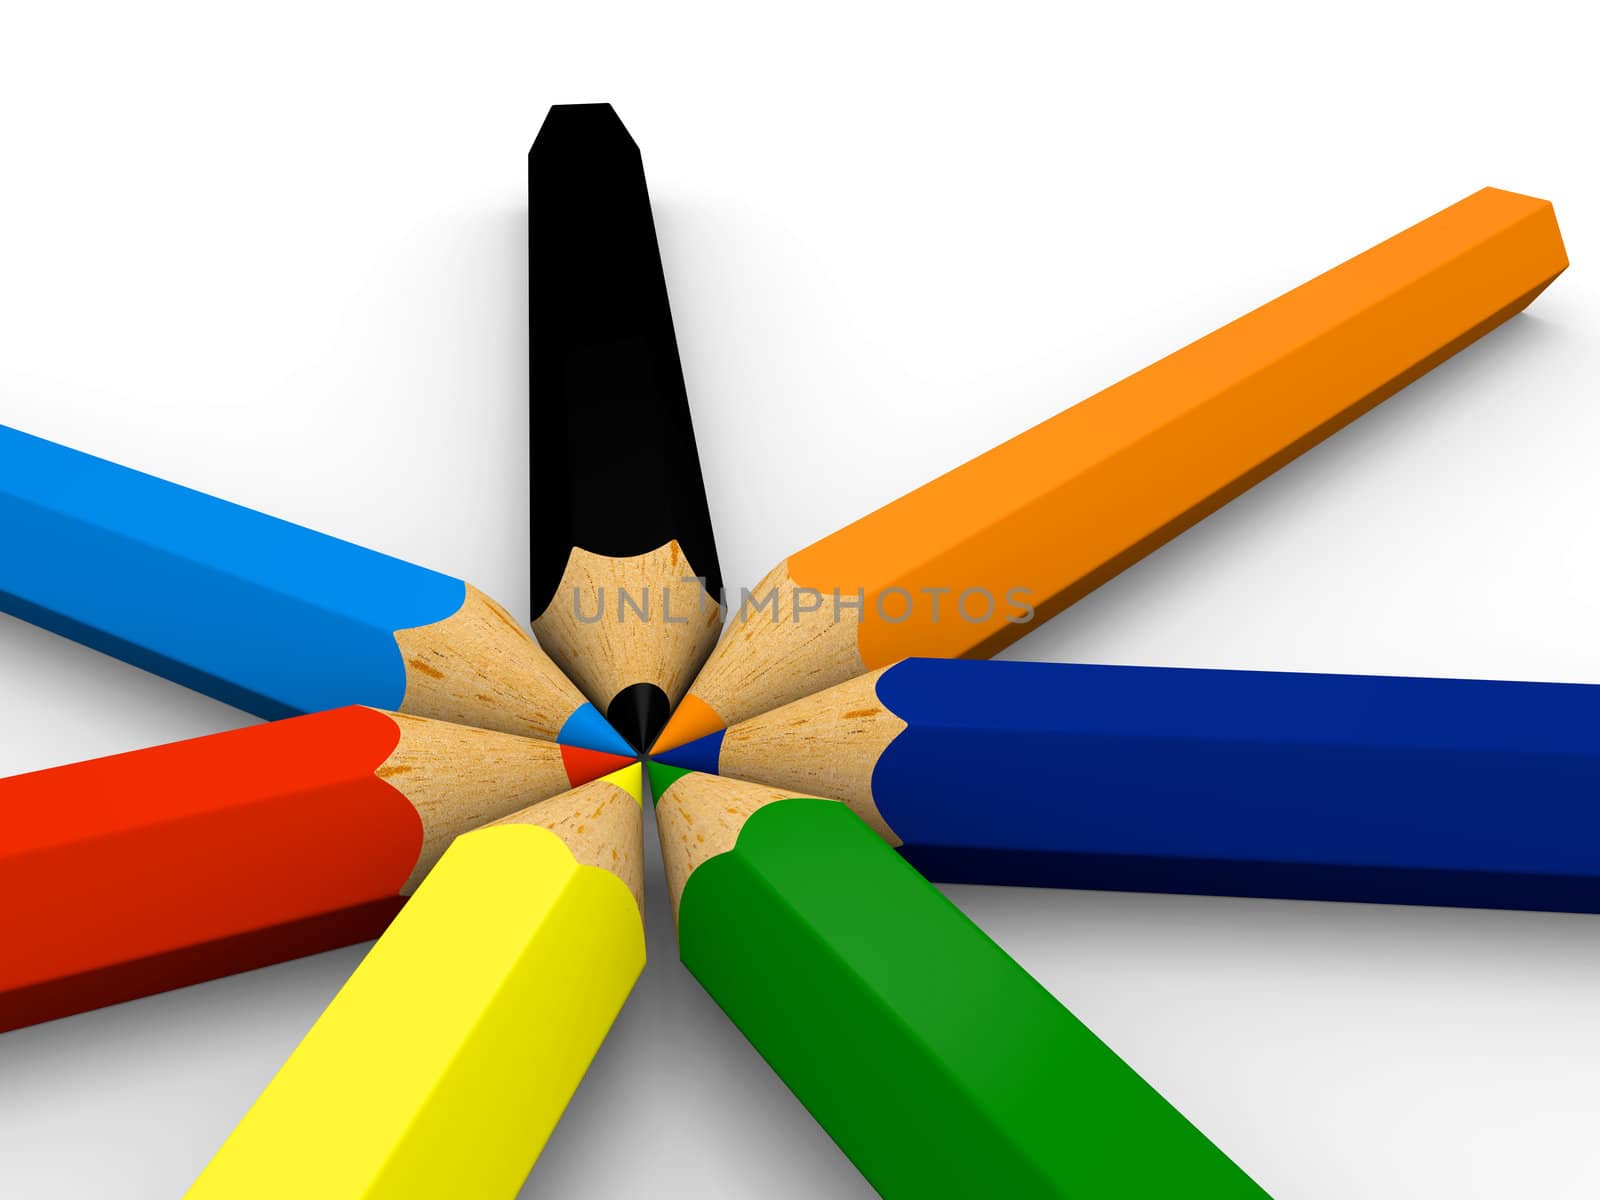 Color pencils by Harvepino